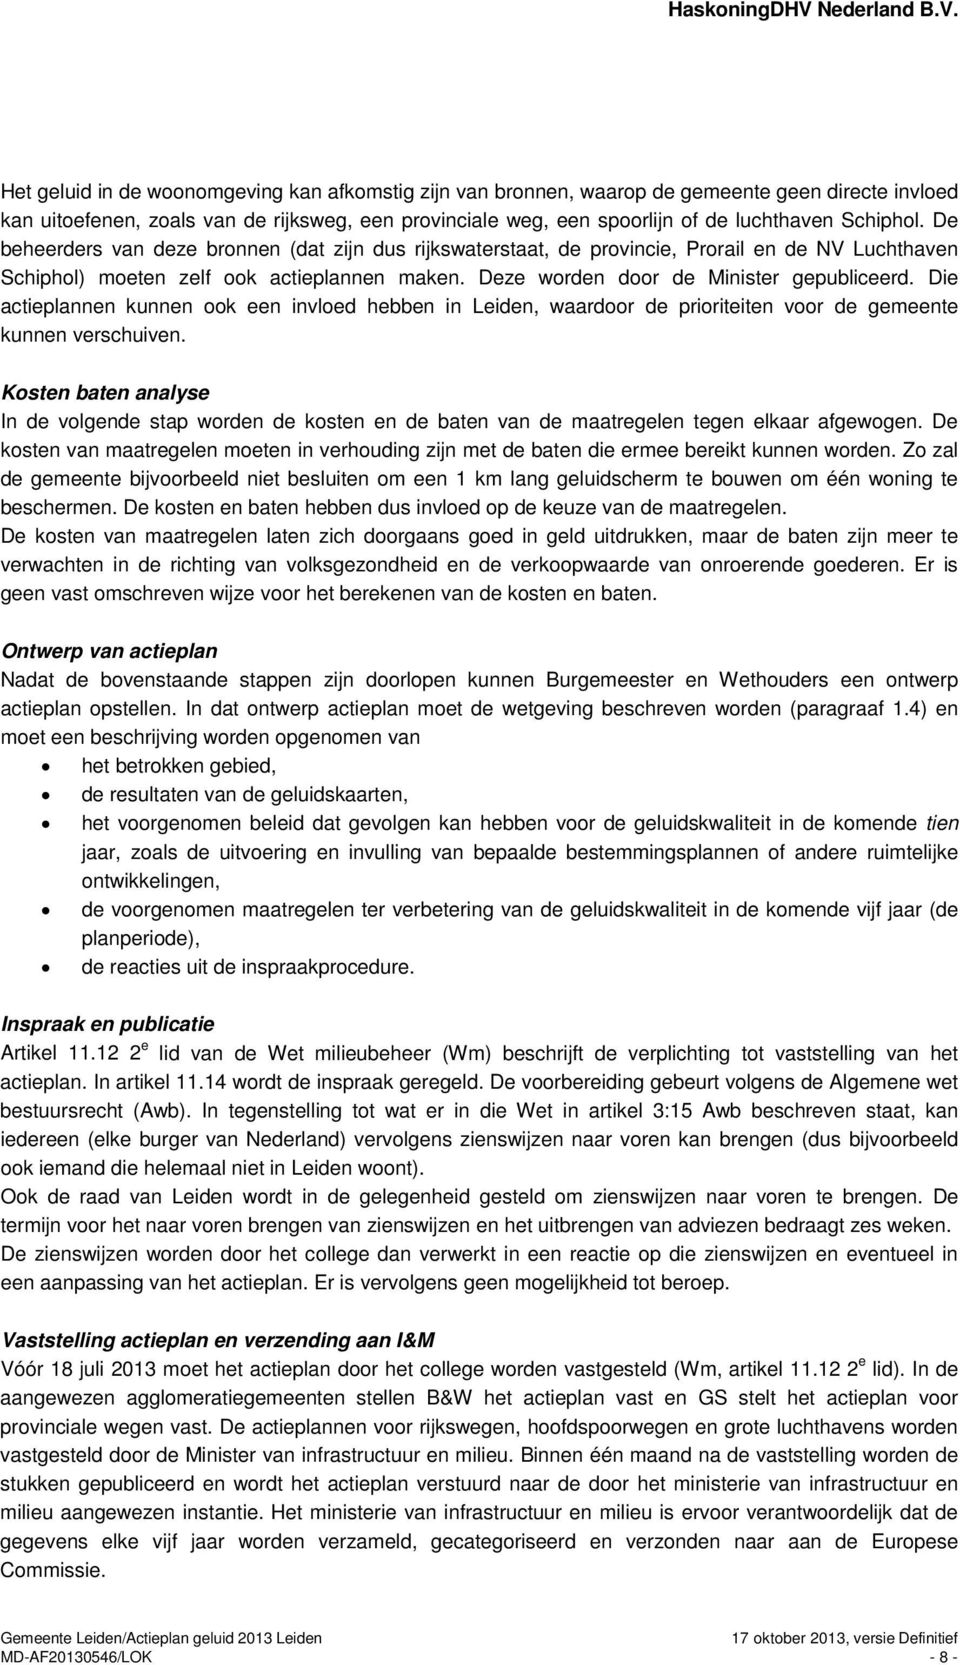 Deze worden door de Minister gepubliceerd. Die actieplannen kunnen ook een invloed hebben in Leiden, waardoor de prioriteiten voor de gemeente kunnen verschuiven.